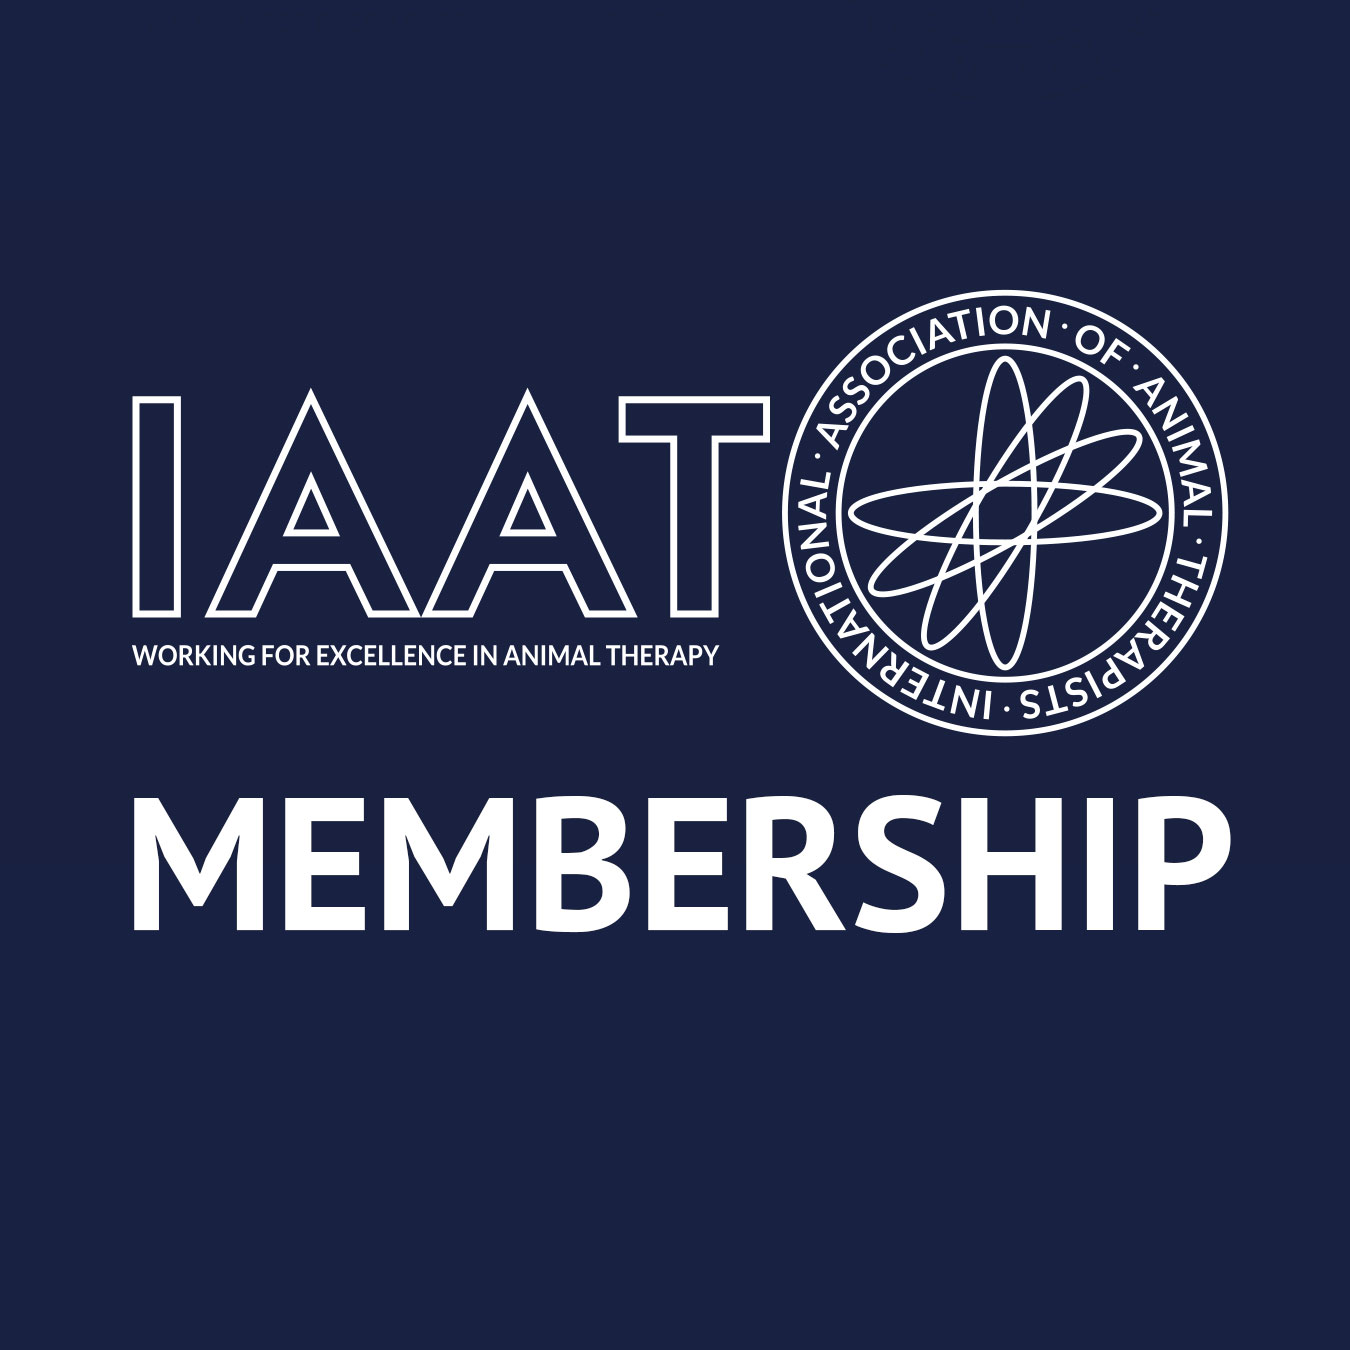 iaat-full-membership-subscription-iatt